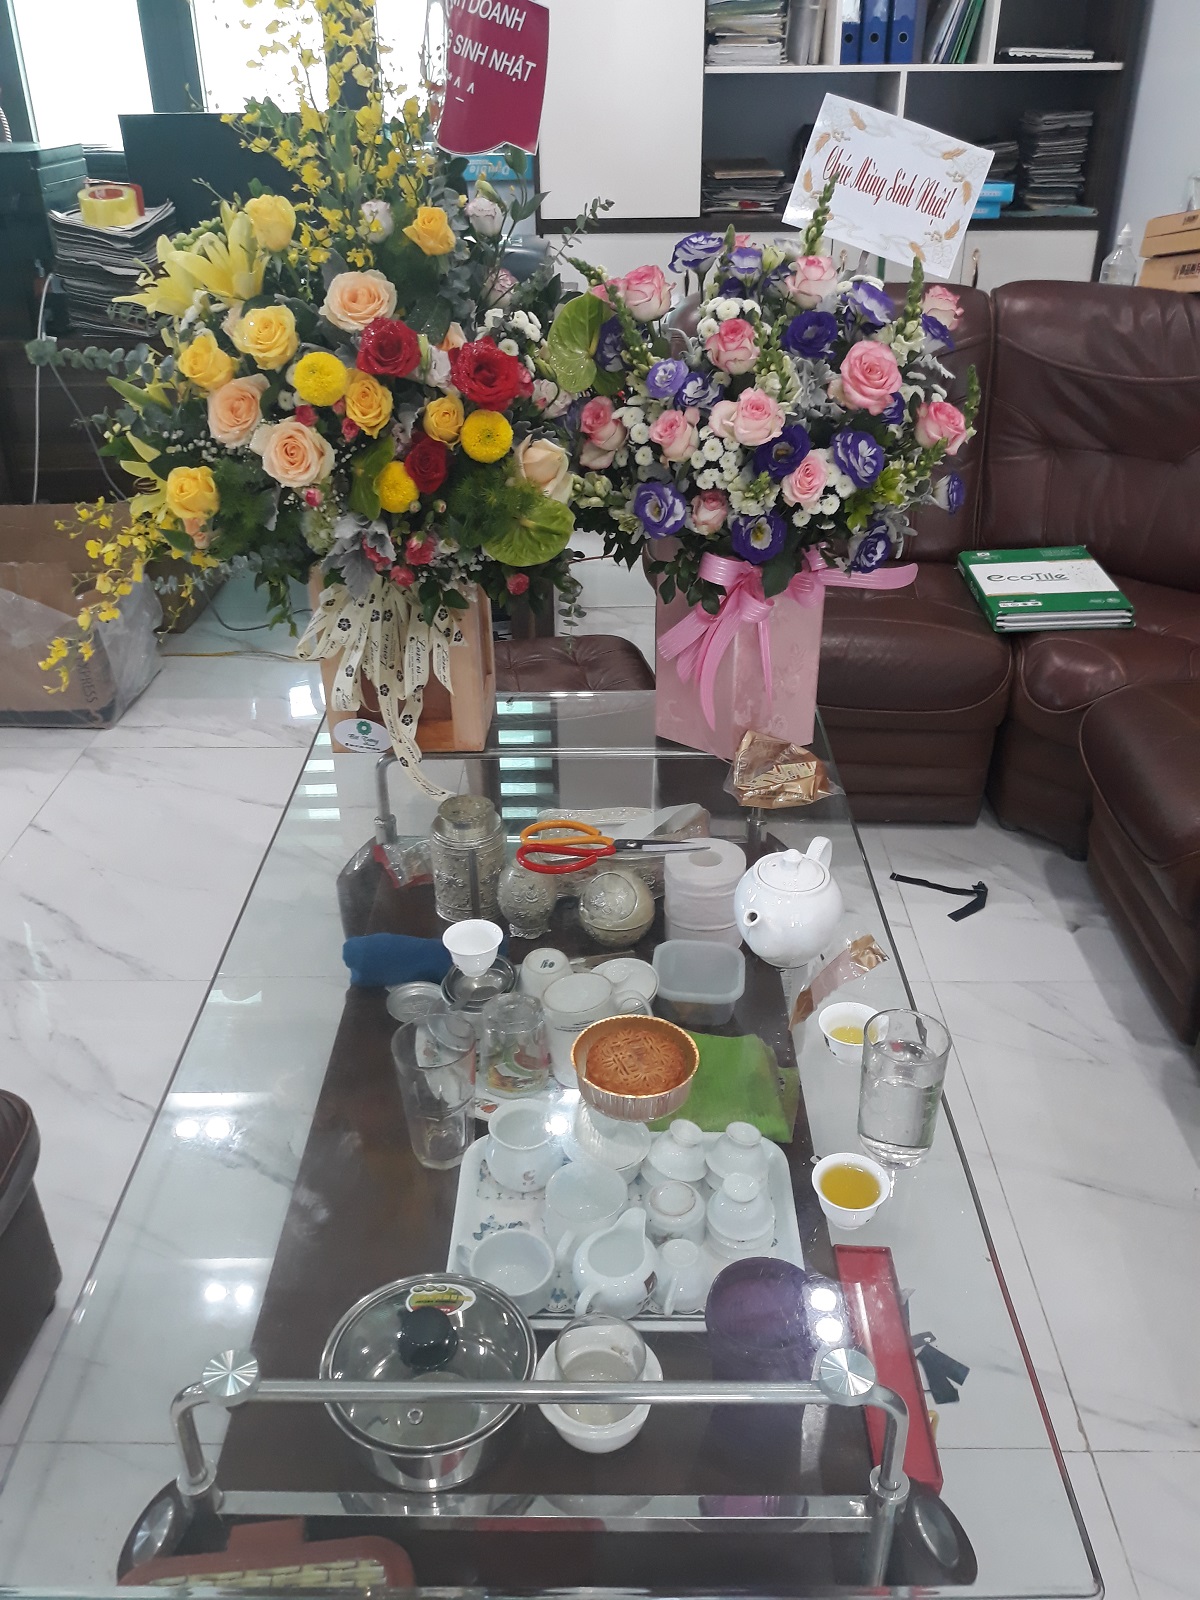 20190914 110701 - Vật tư da giày Vân Hà - Chúc mừng sinh nhật sếp